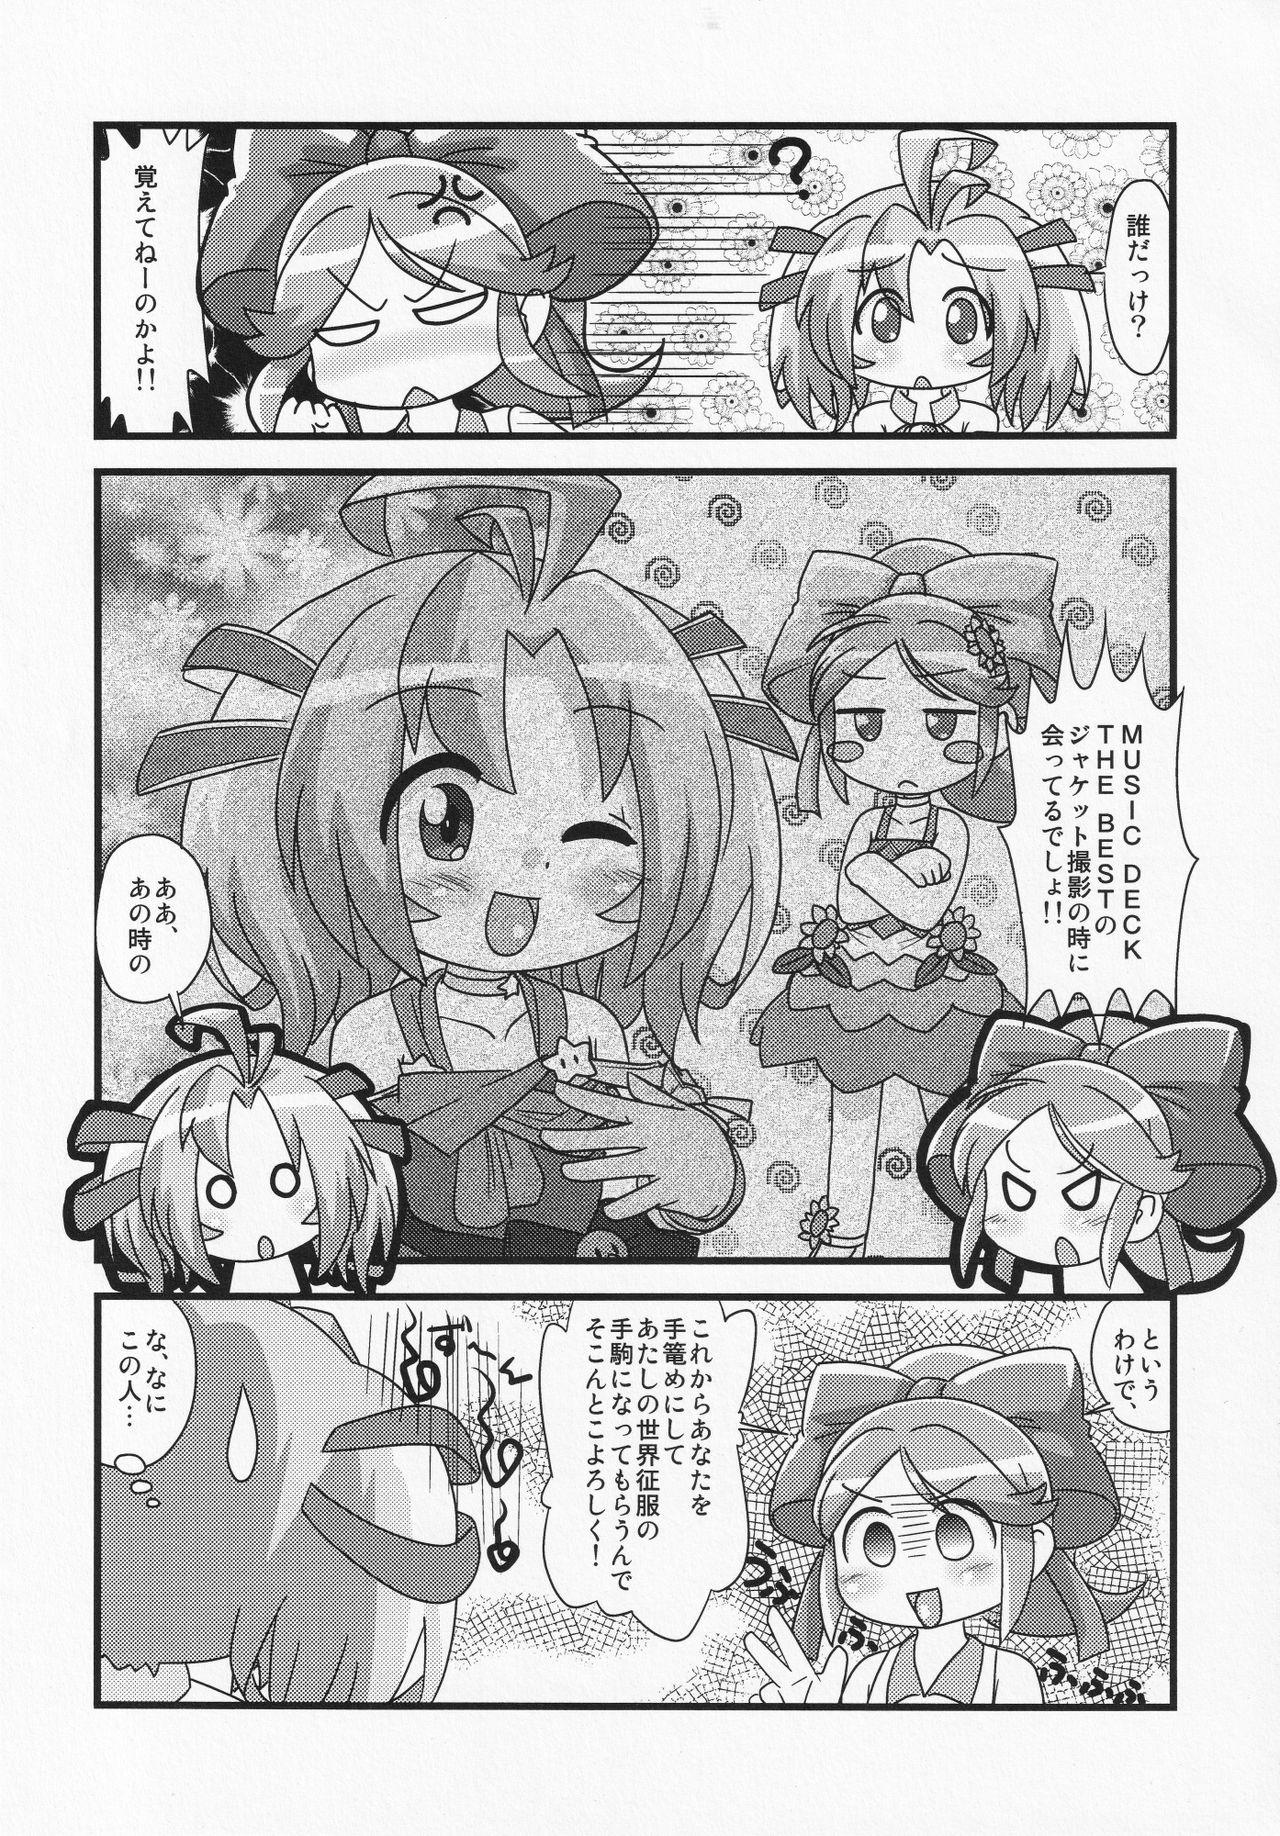 Str8 Makeru na!! Kimari-chan - Battle spirits Porno 18 - Page 5